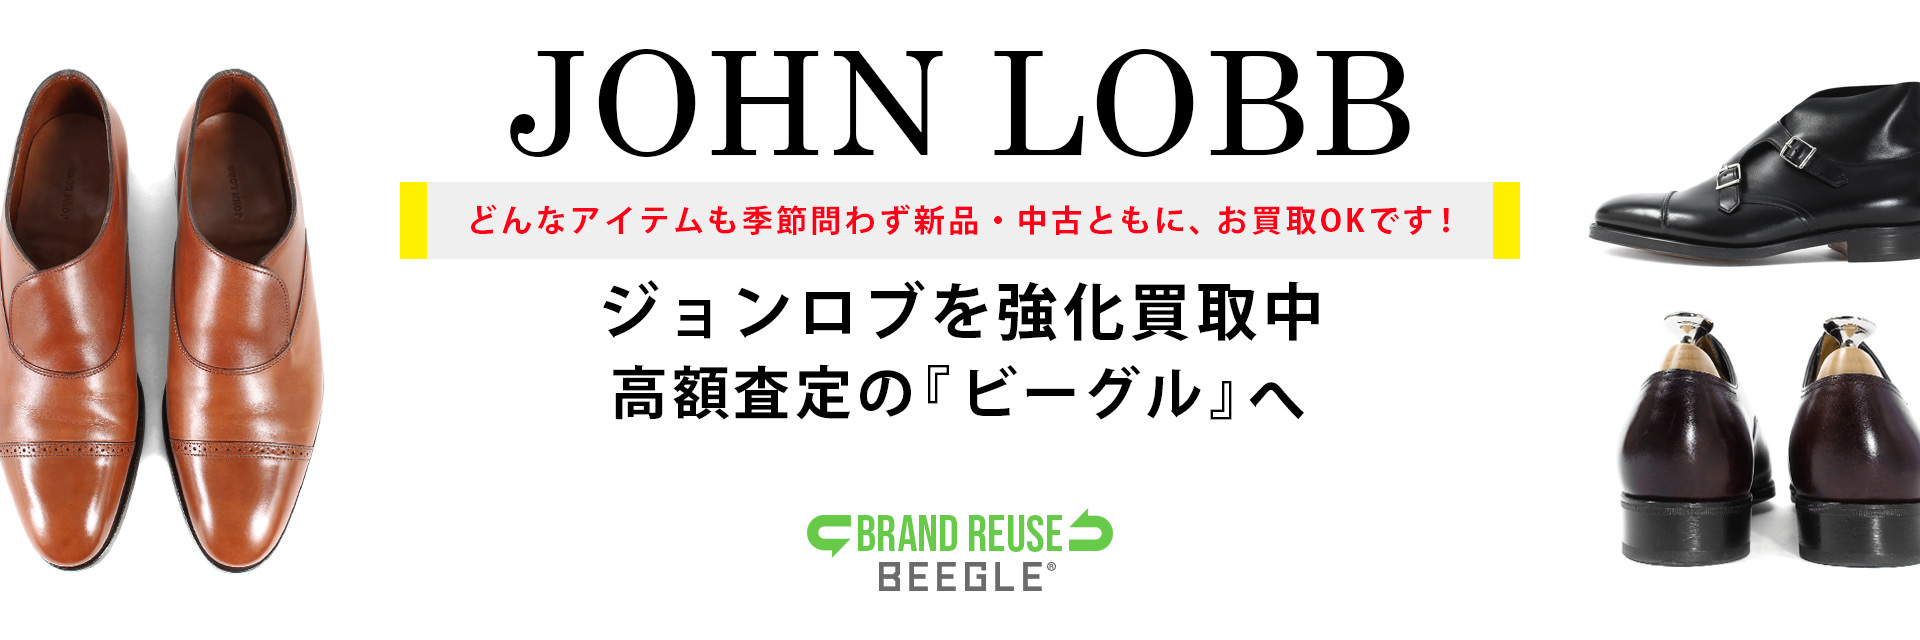 JOHN LOBB